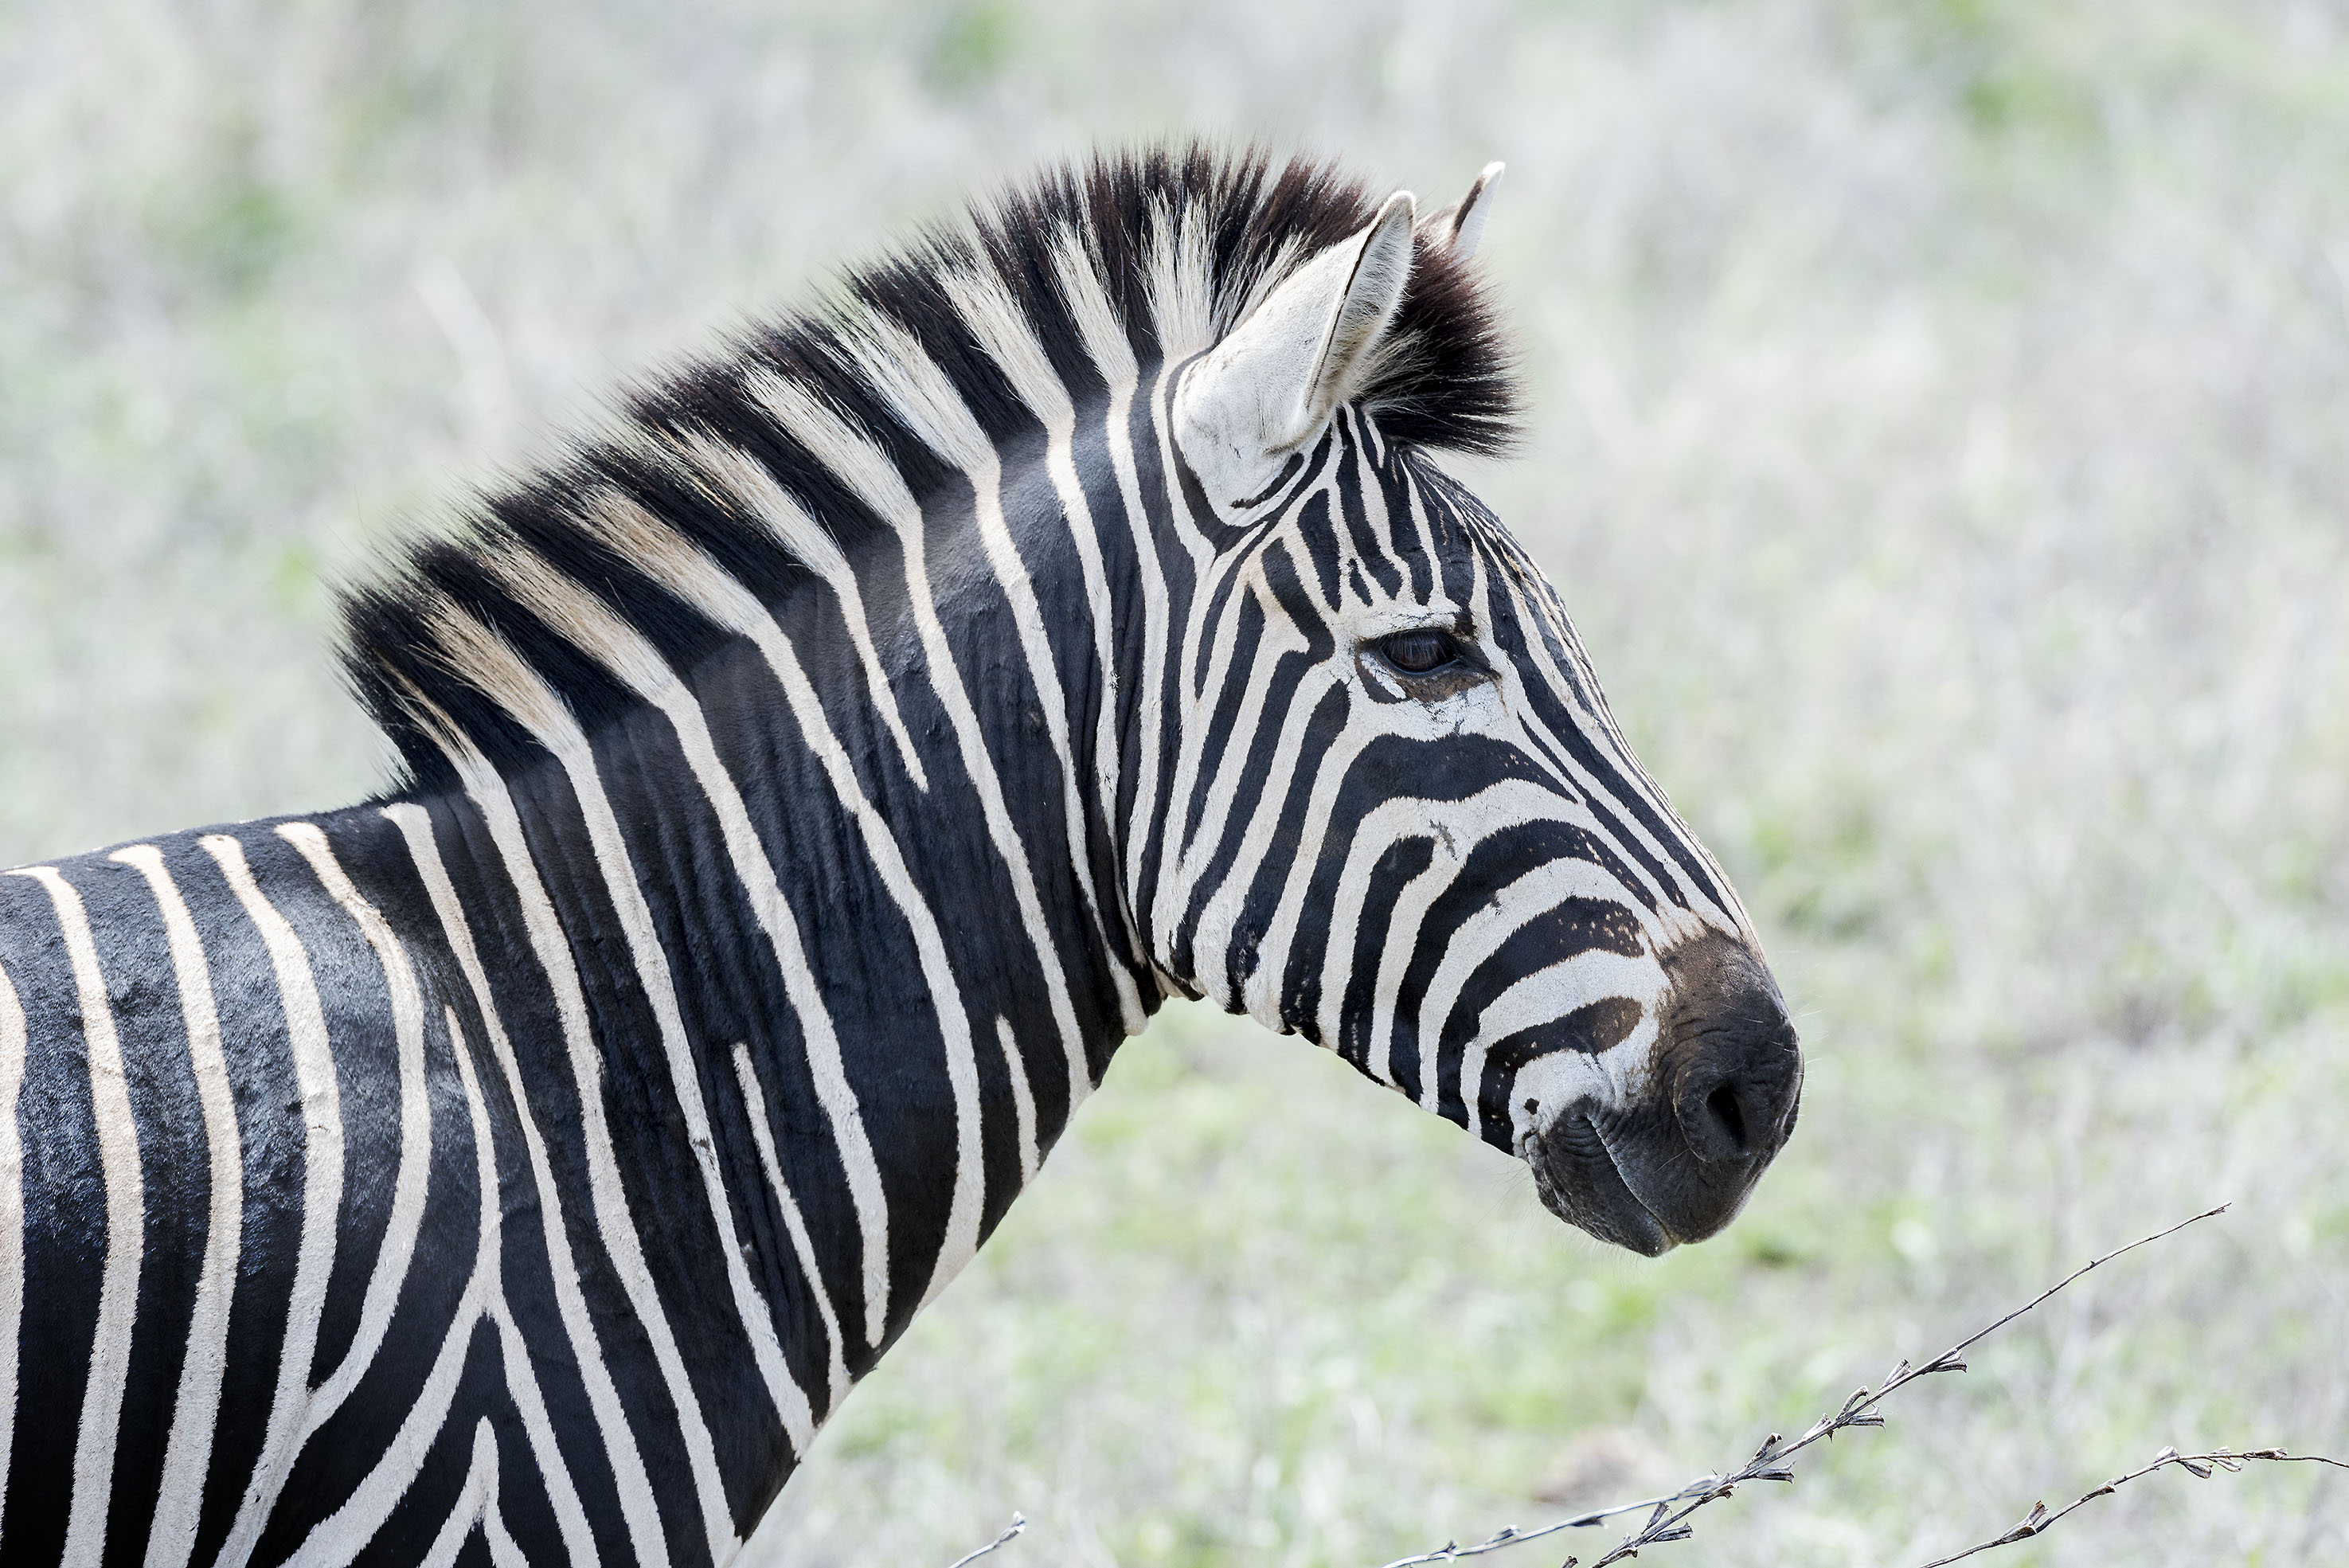 Arthur Los Fotografie - South African National Park Kruger